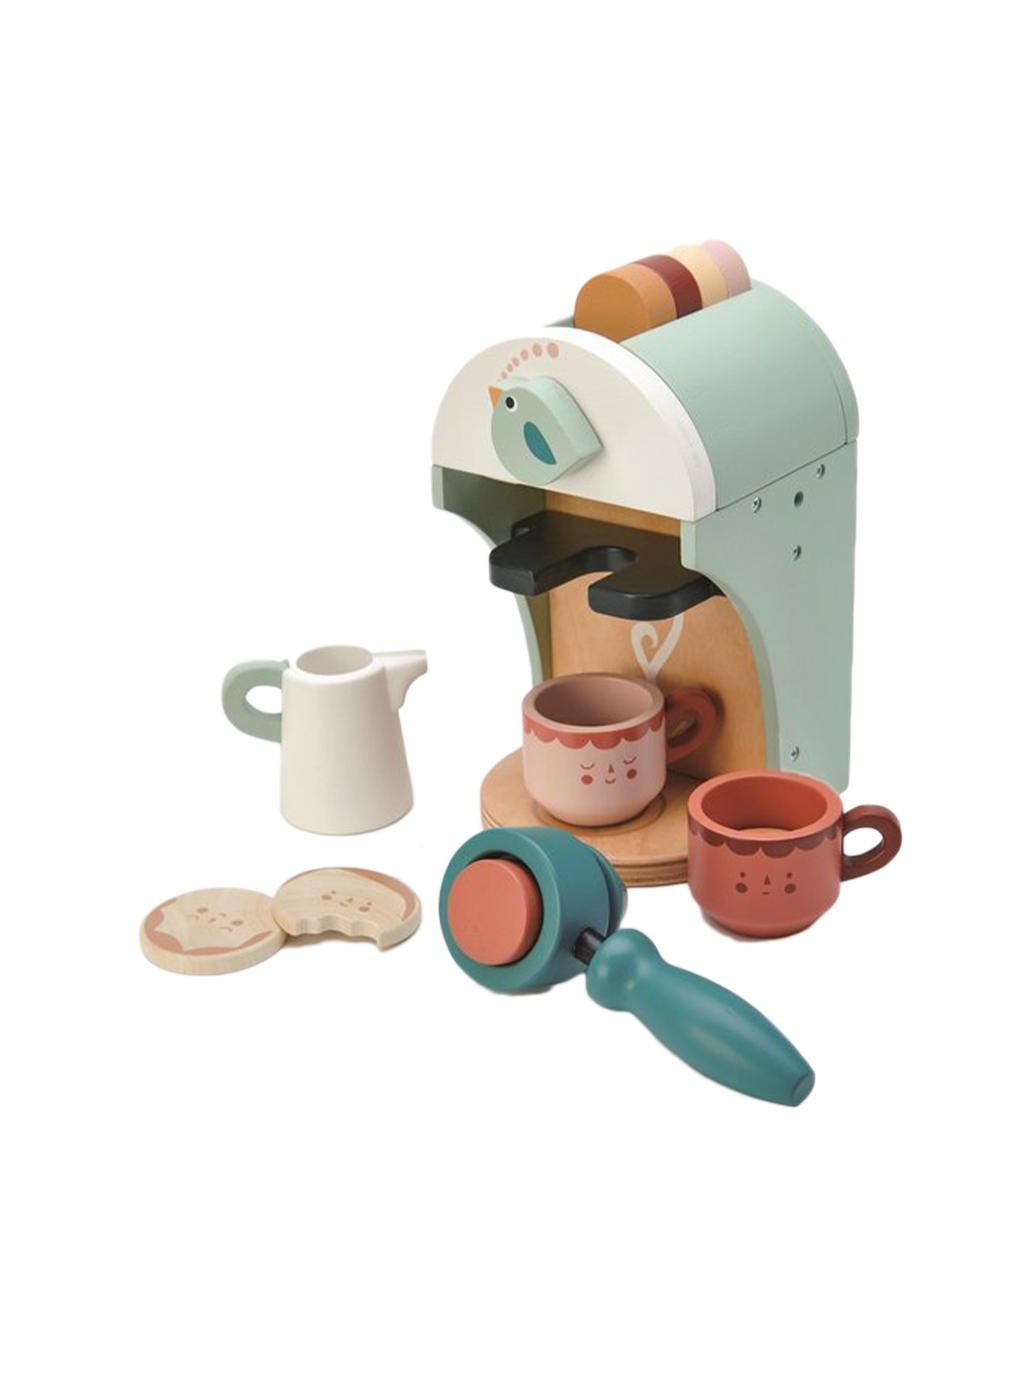 Babyccino coffee machine